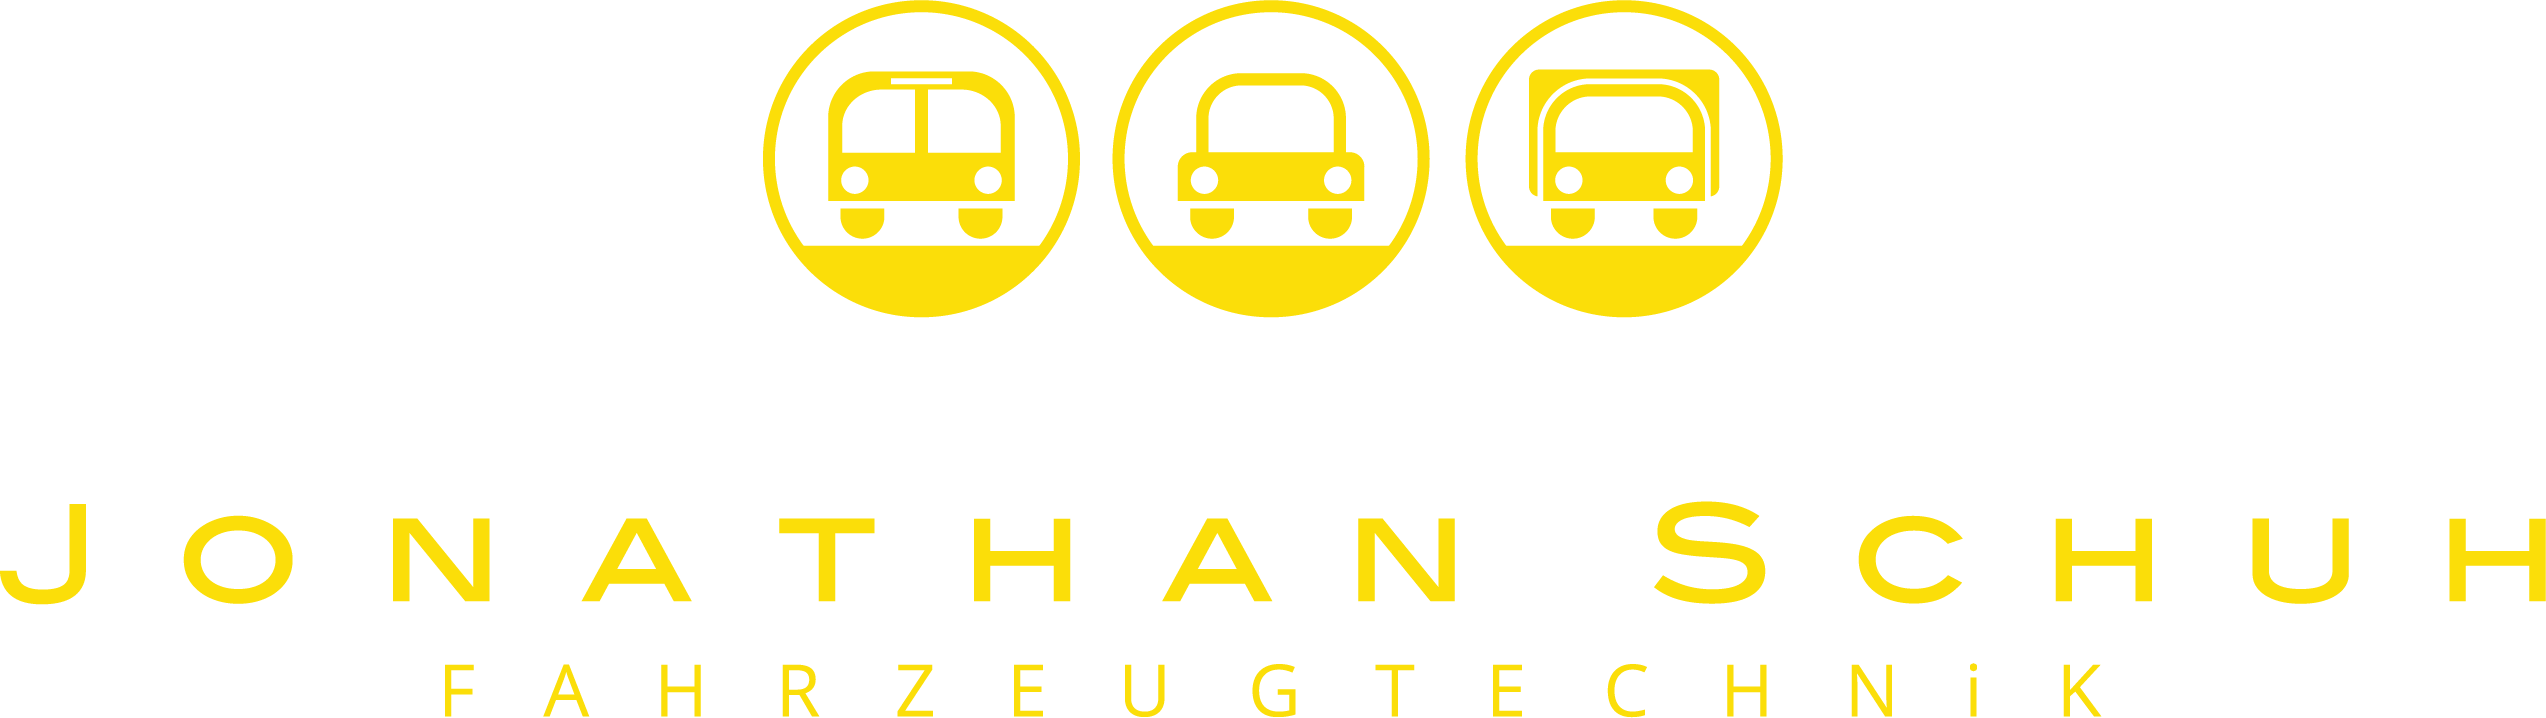 Logo der Fahrzeugtechnik Jonathan Schuh